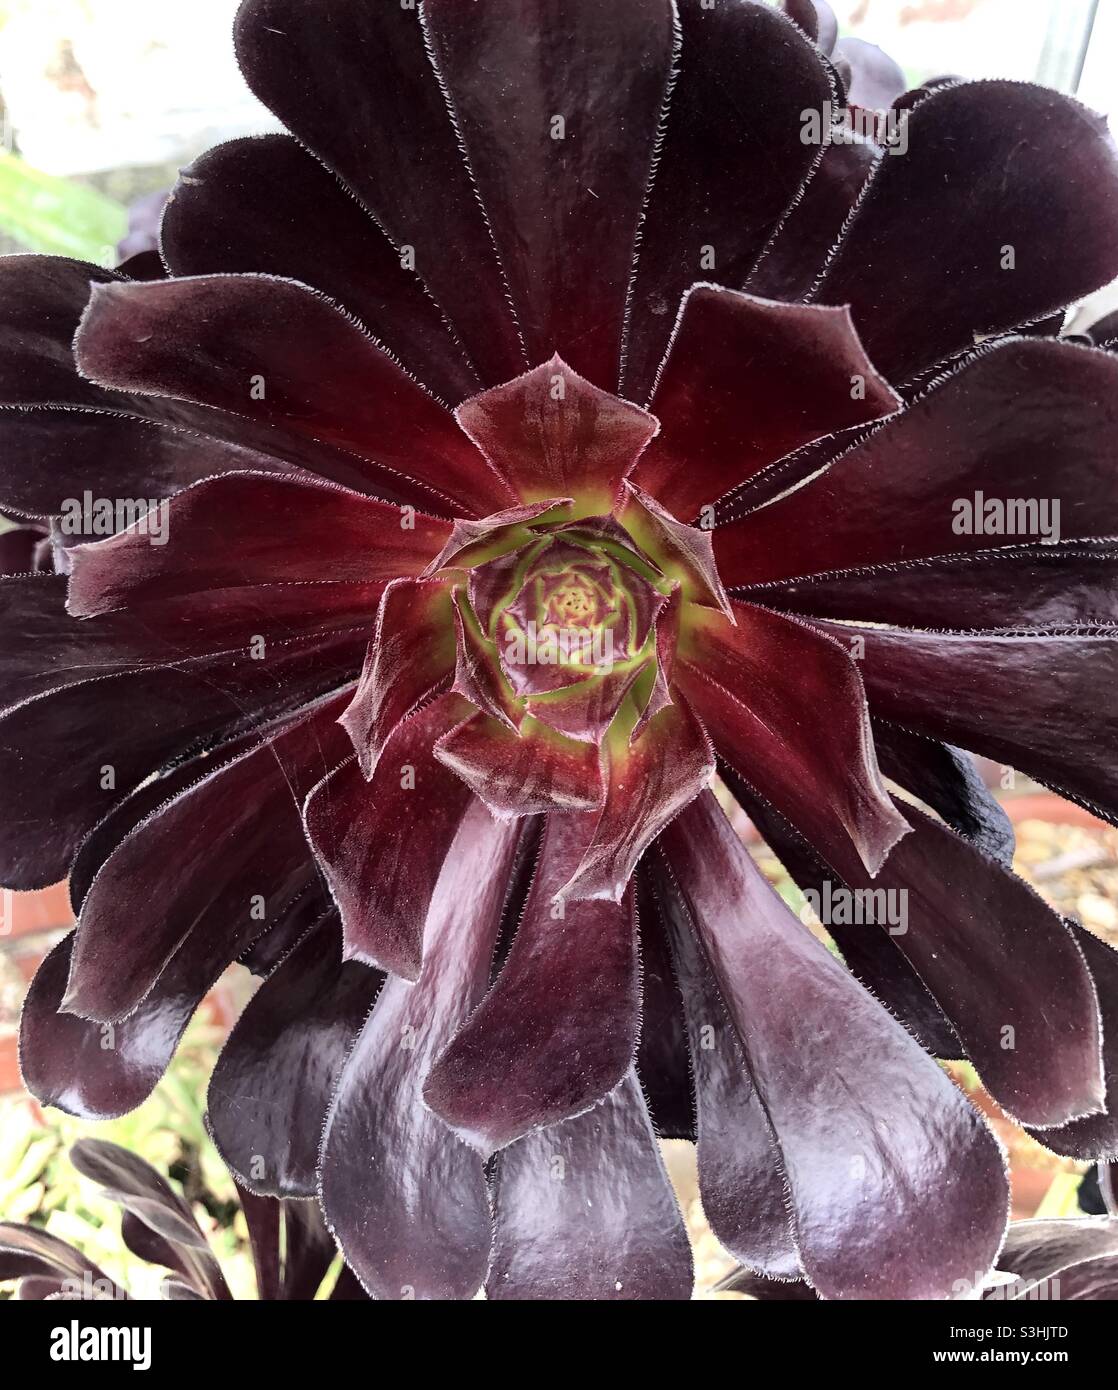 Aeonium arboreum or Black rose succulent plant Stock Photo